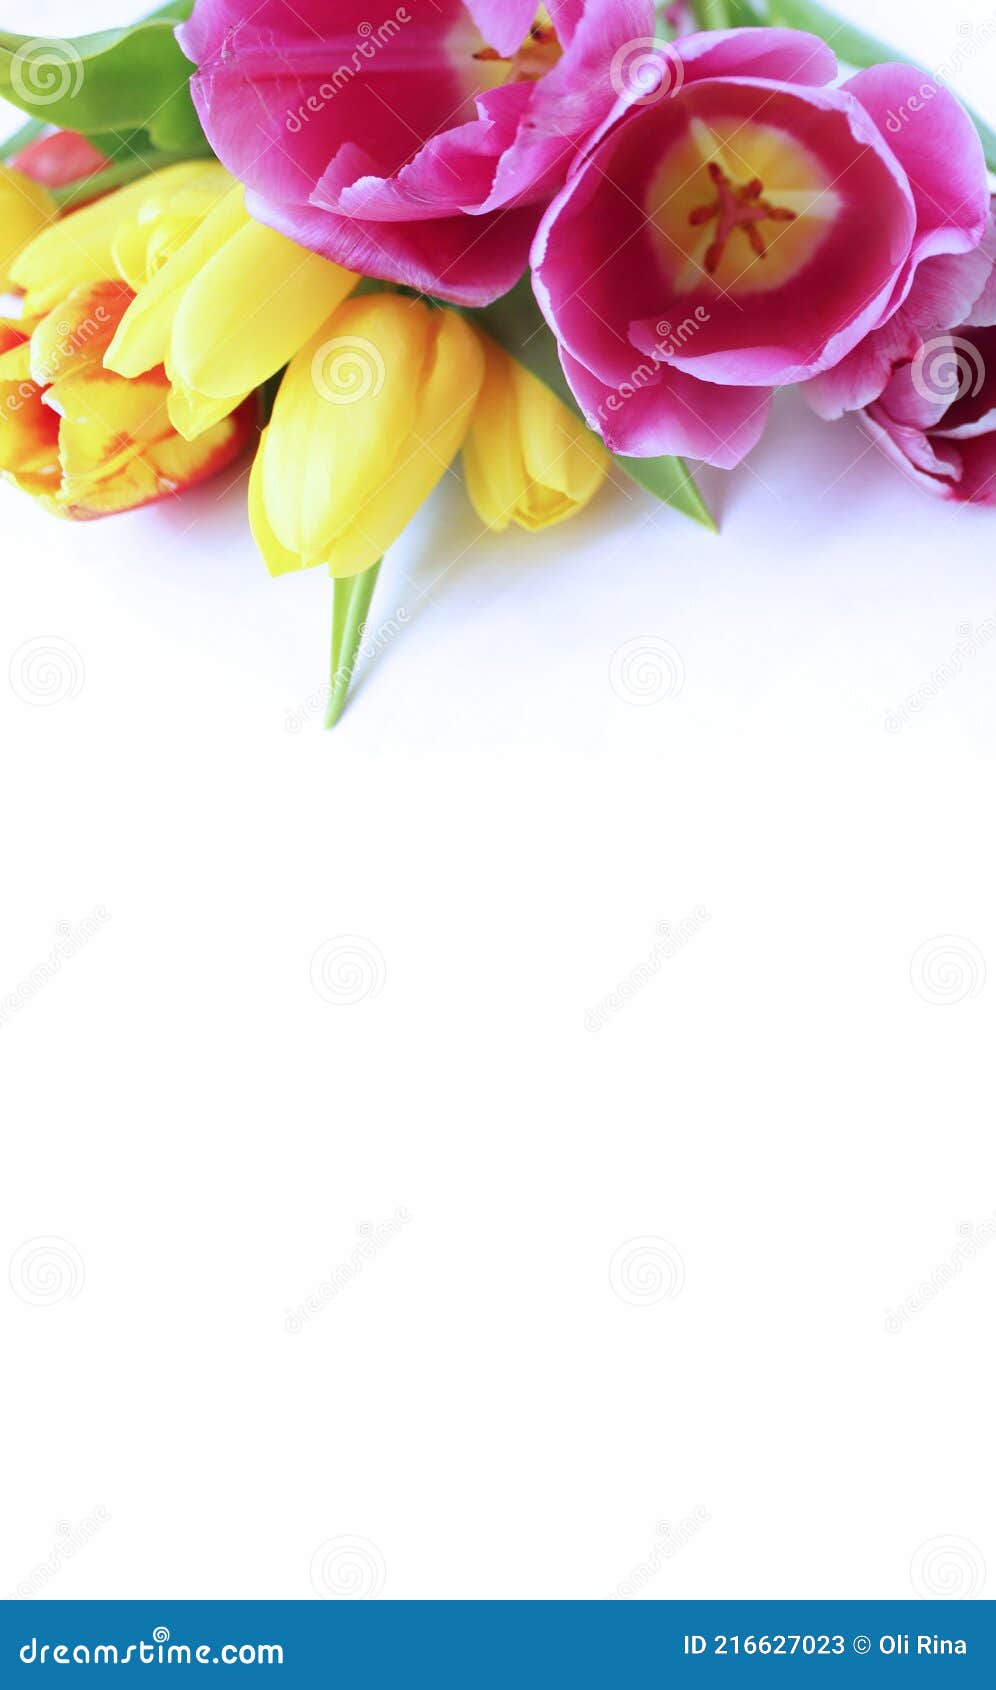 Tulipanes Rosas Y Amarillos Sobre Fondo Blanco. Delicado Arreglo Floral.  Imagen de archivo - Imagen de amarillo, floral: 216627023